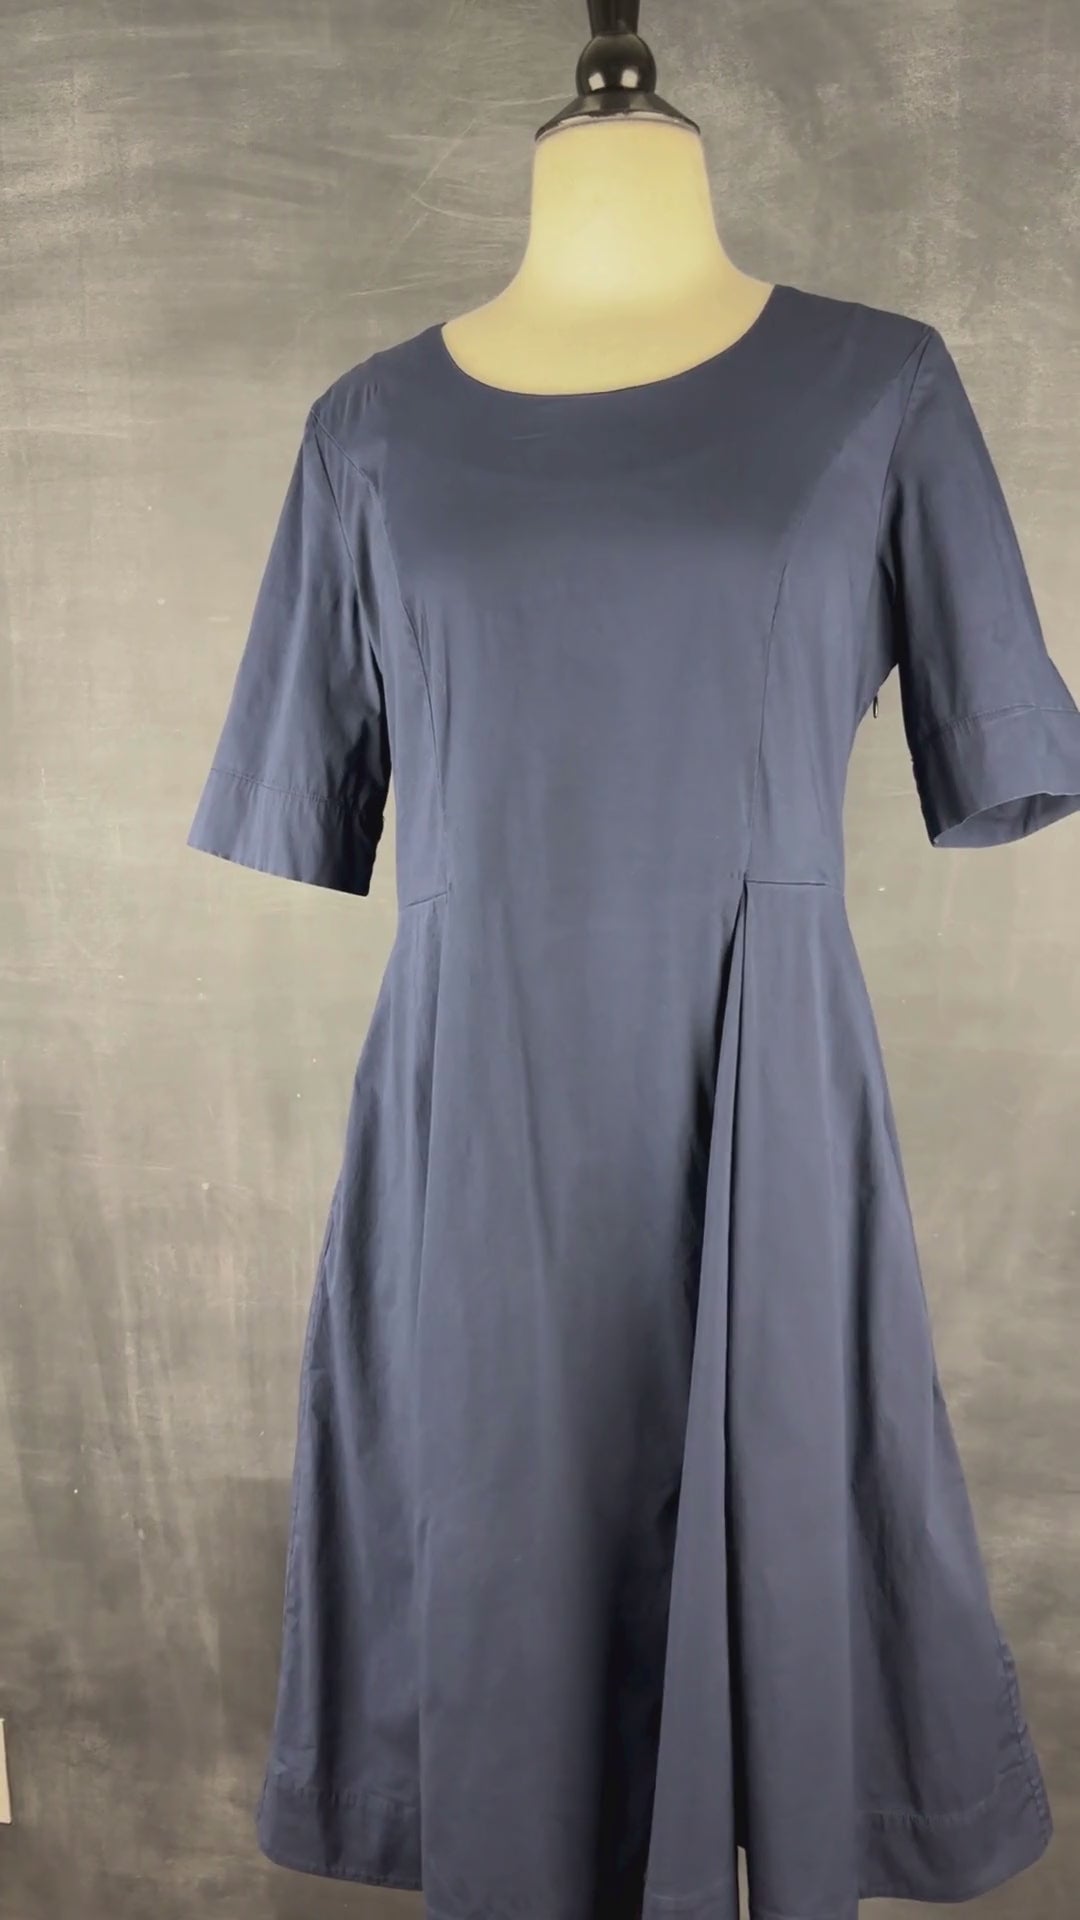 Robe marine jupe ample avec poches Cos, taille 8 (small). Vue de la vidéo qui présente tous les détails de la robe.